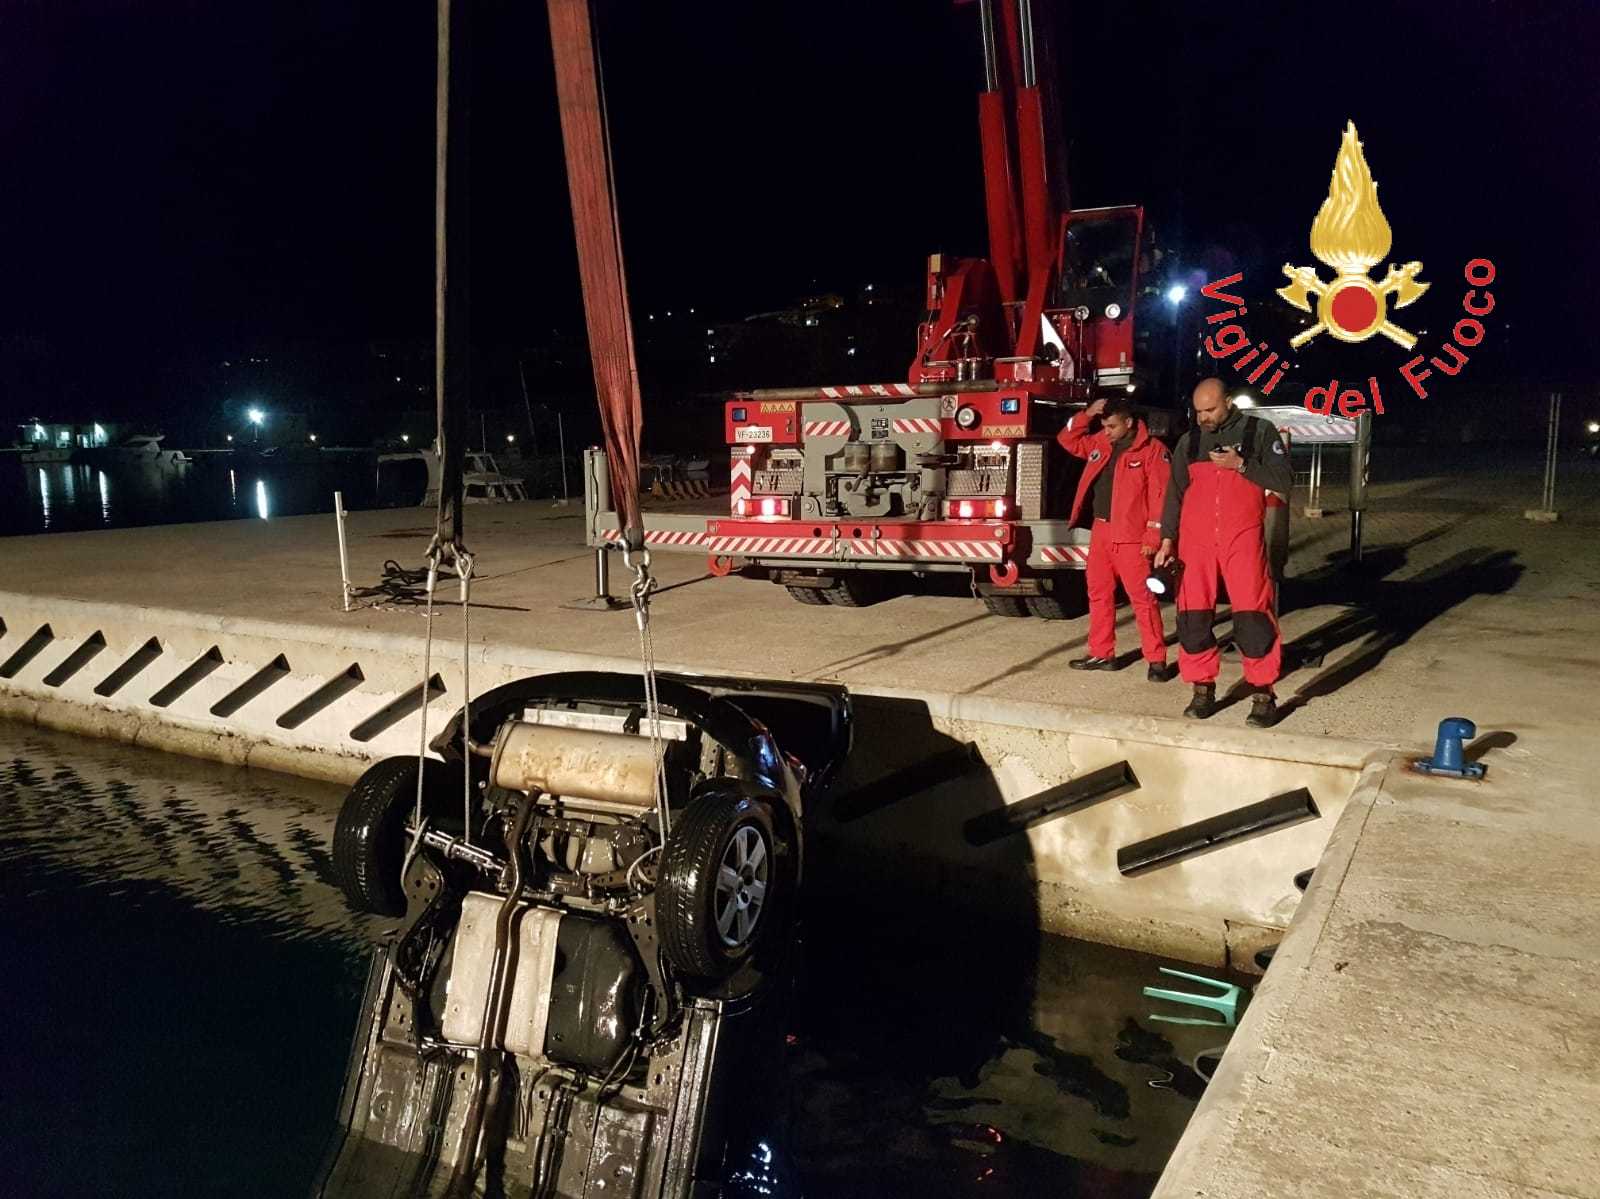 Villa San Giovanni auto finisce in mare, tempestivo intervento dei Sommozzatori VVF (Foto)